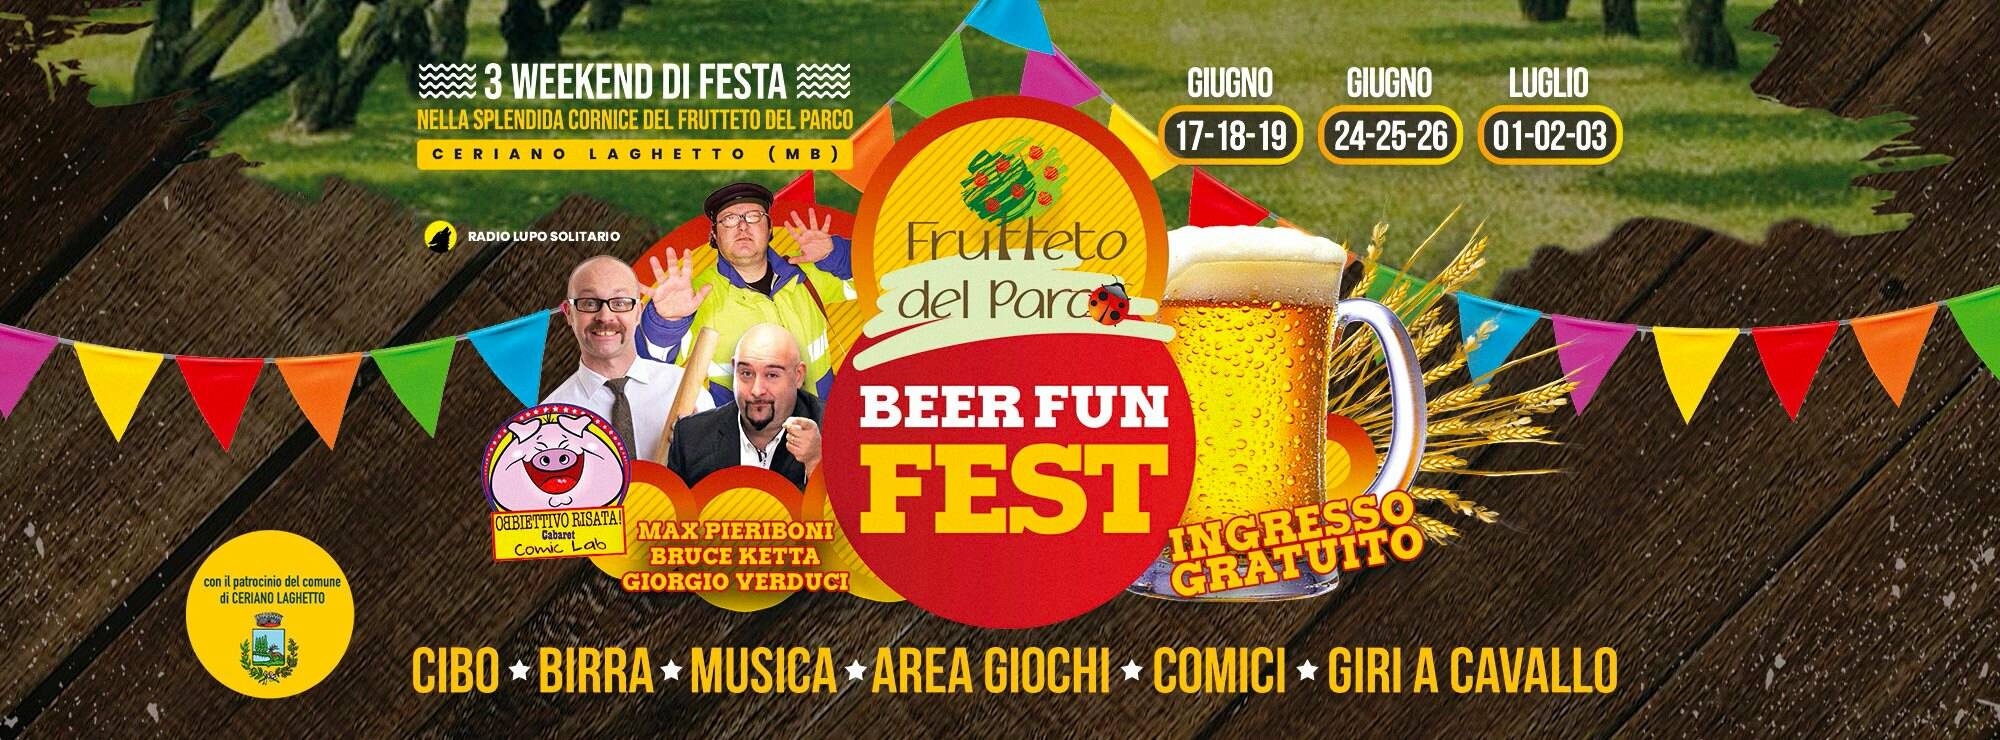 beer-fun-fest-loc22